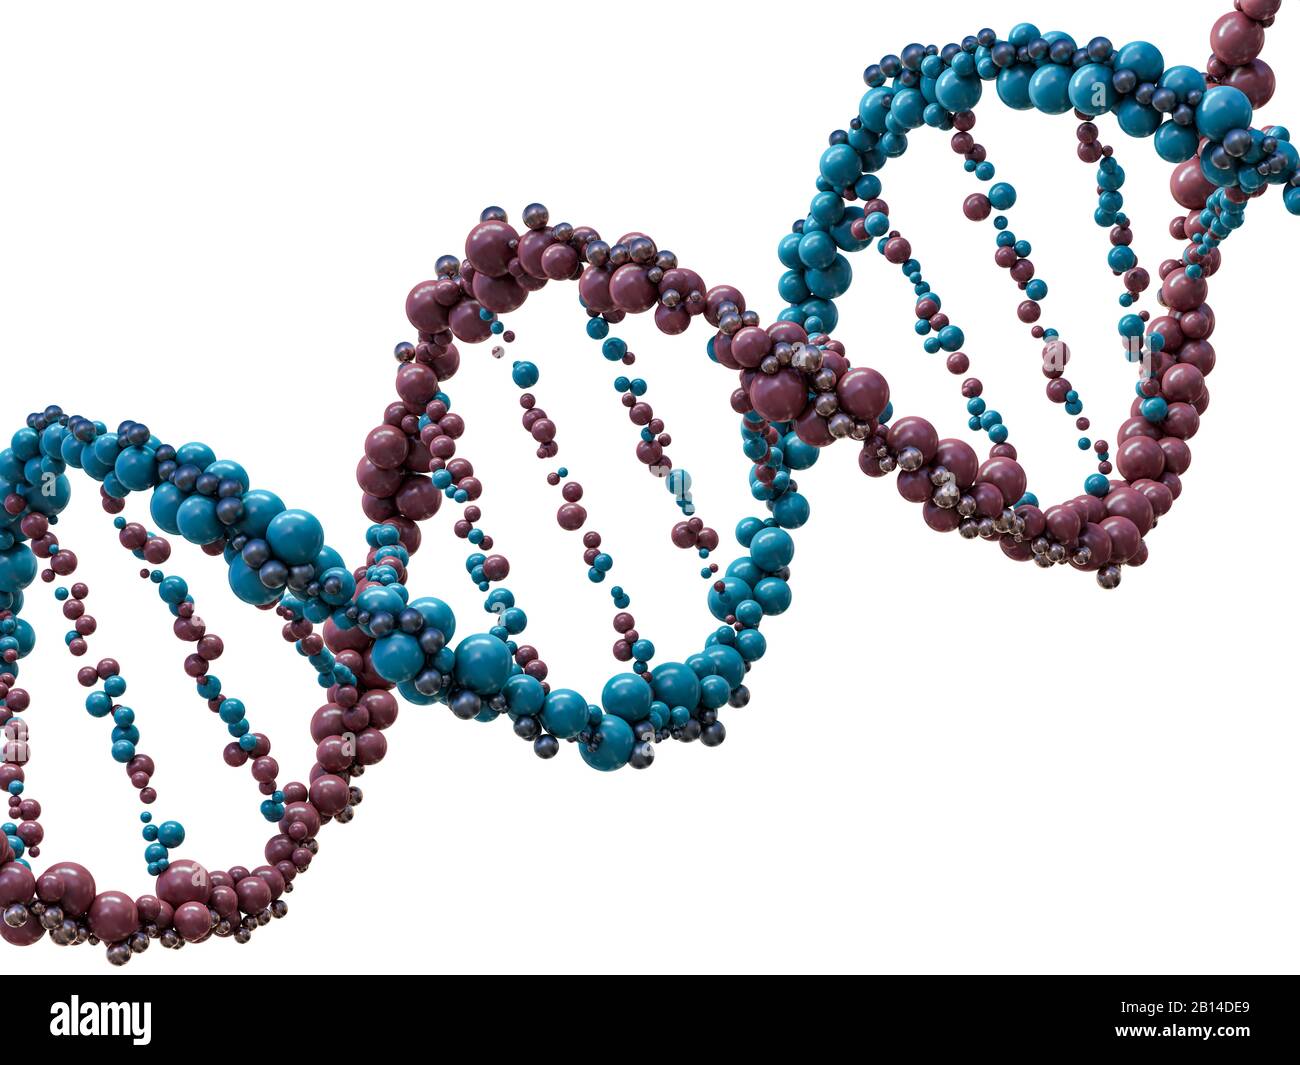 La chaîne d'ADN. Abstract background scientifique. Belle illustraion. La biotechnologie, la biochimie, de la génétique et de la médecine. Le rendu 3D Banque D'Images